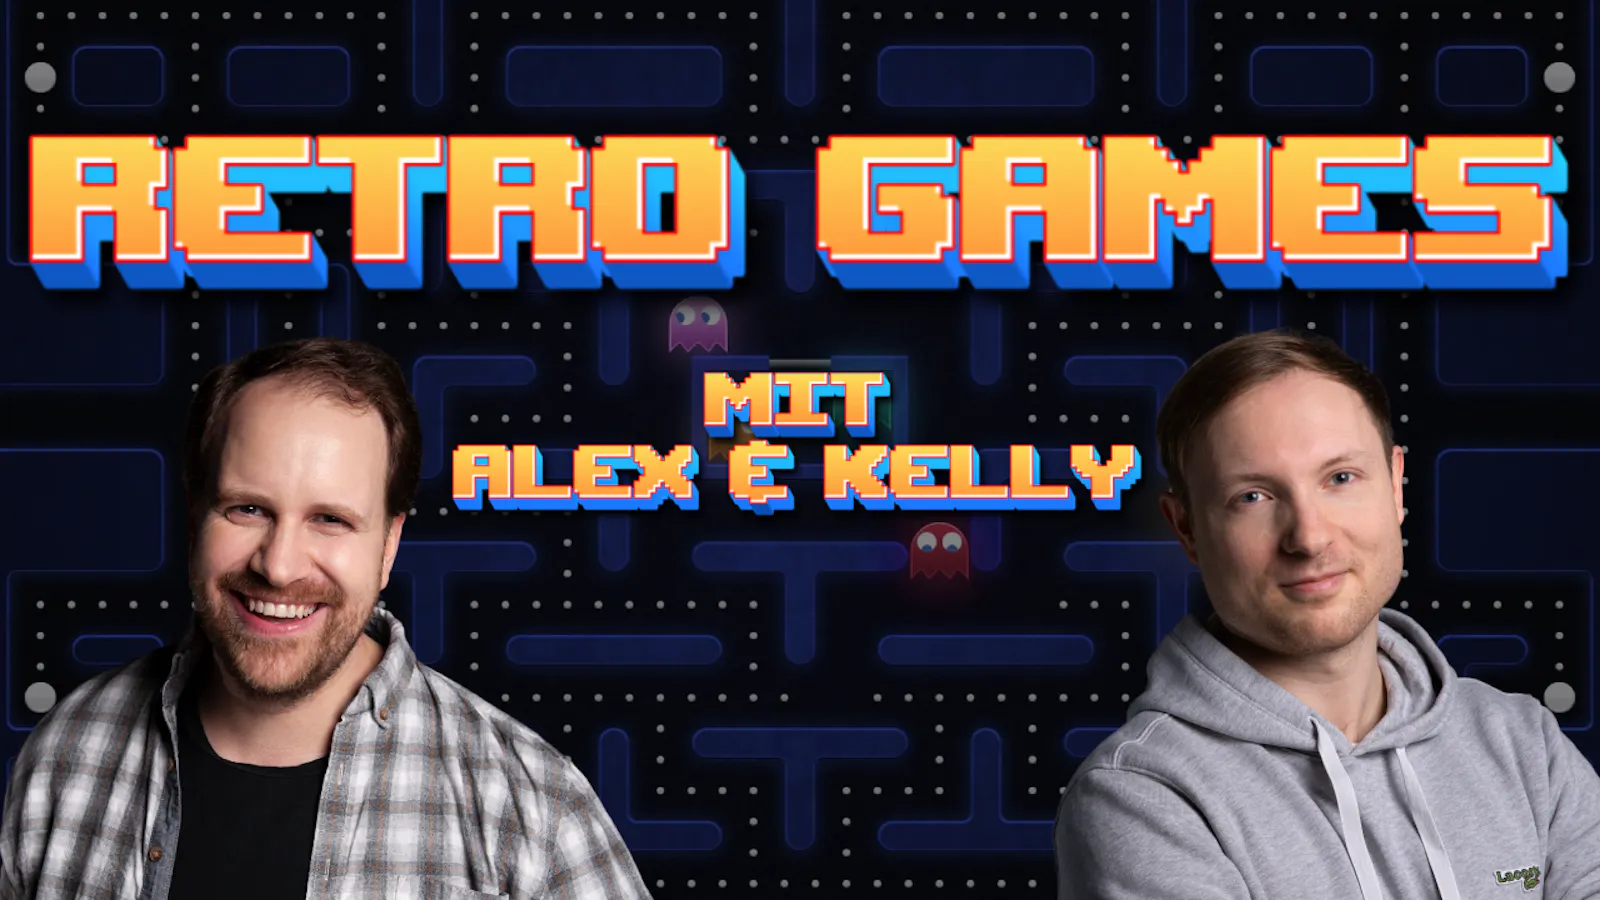 Alex und Kelly vor einem Hintergrund, der an PAC-MAN erinnert. Darüber die Überschrift "Retro Games - Mit Alex & Kelly"